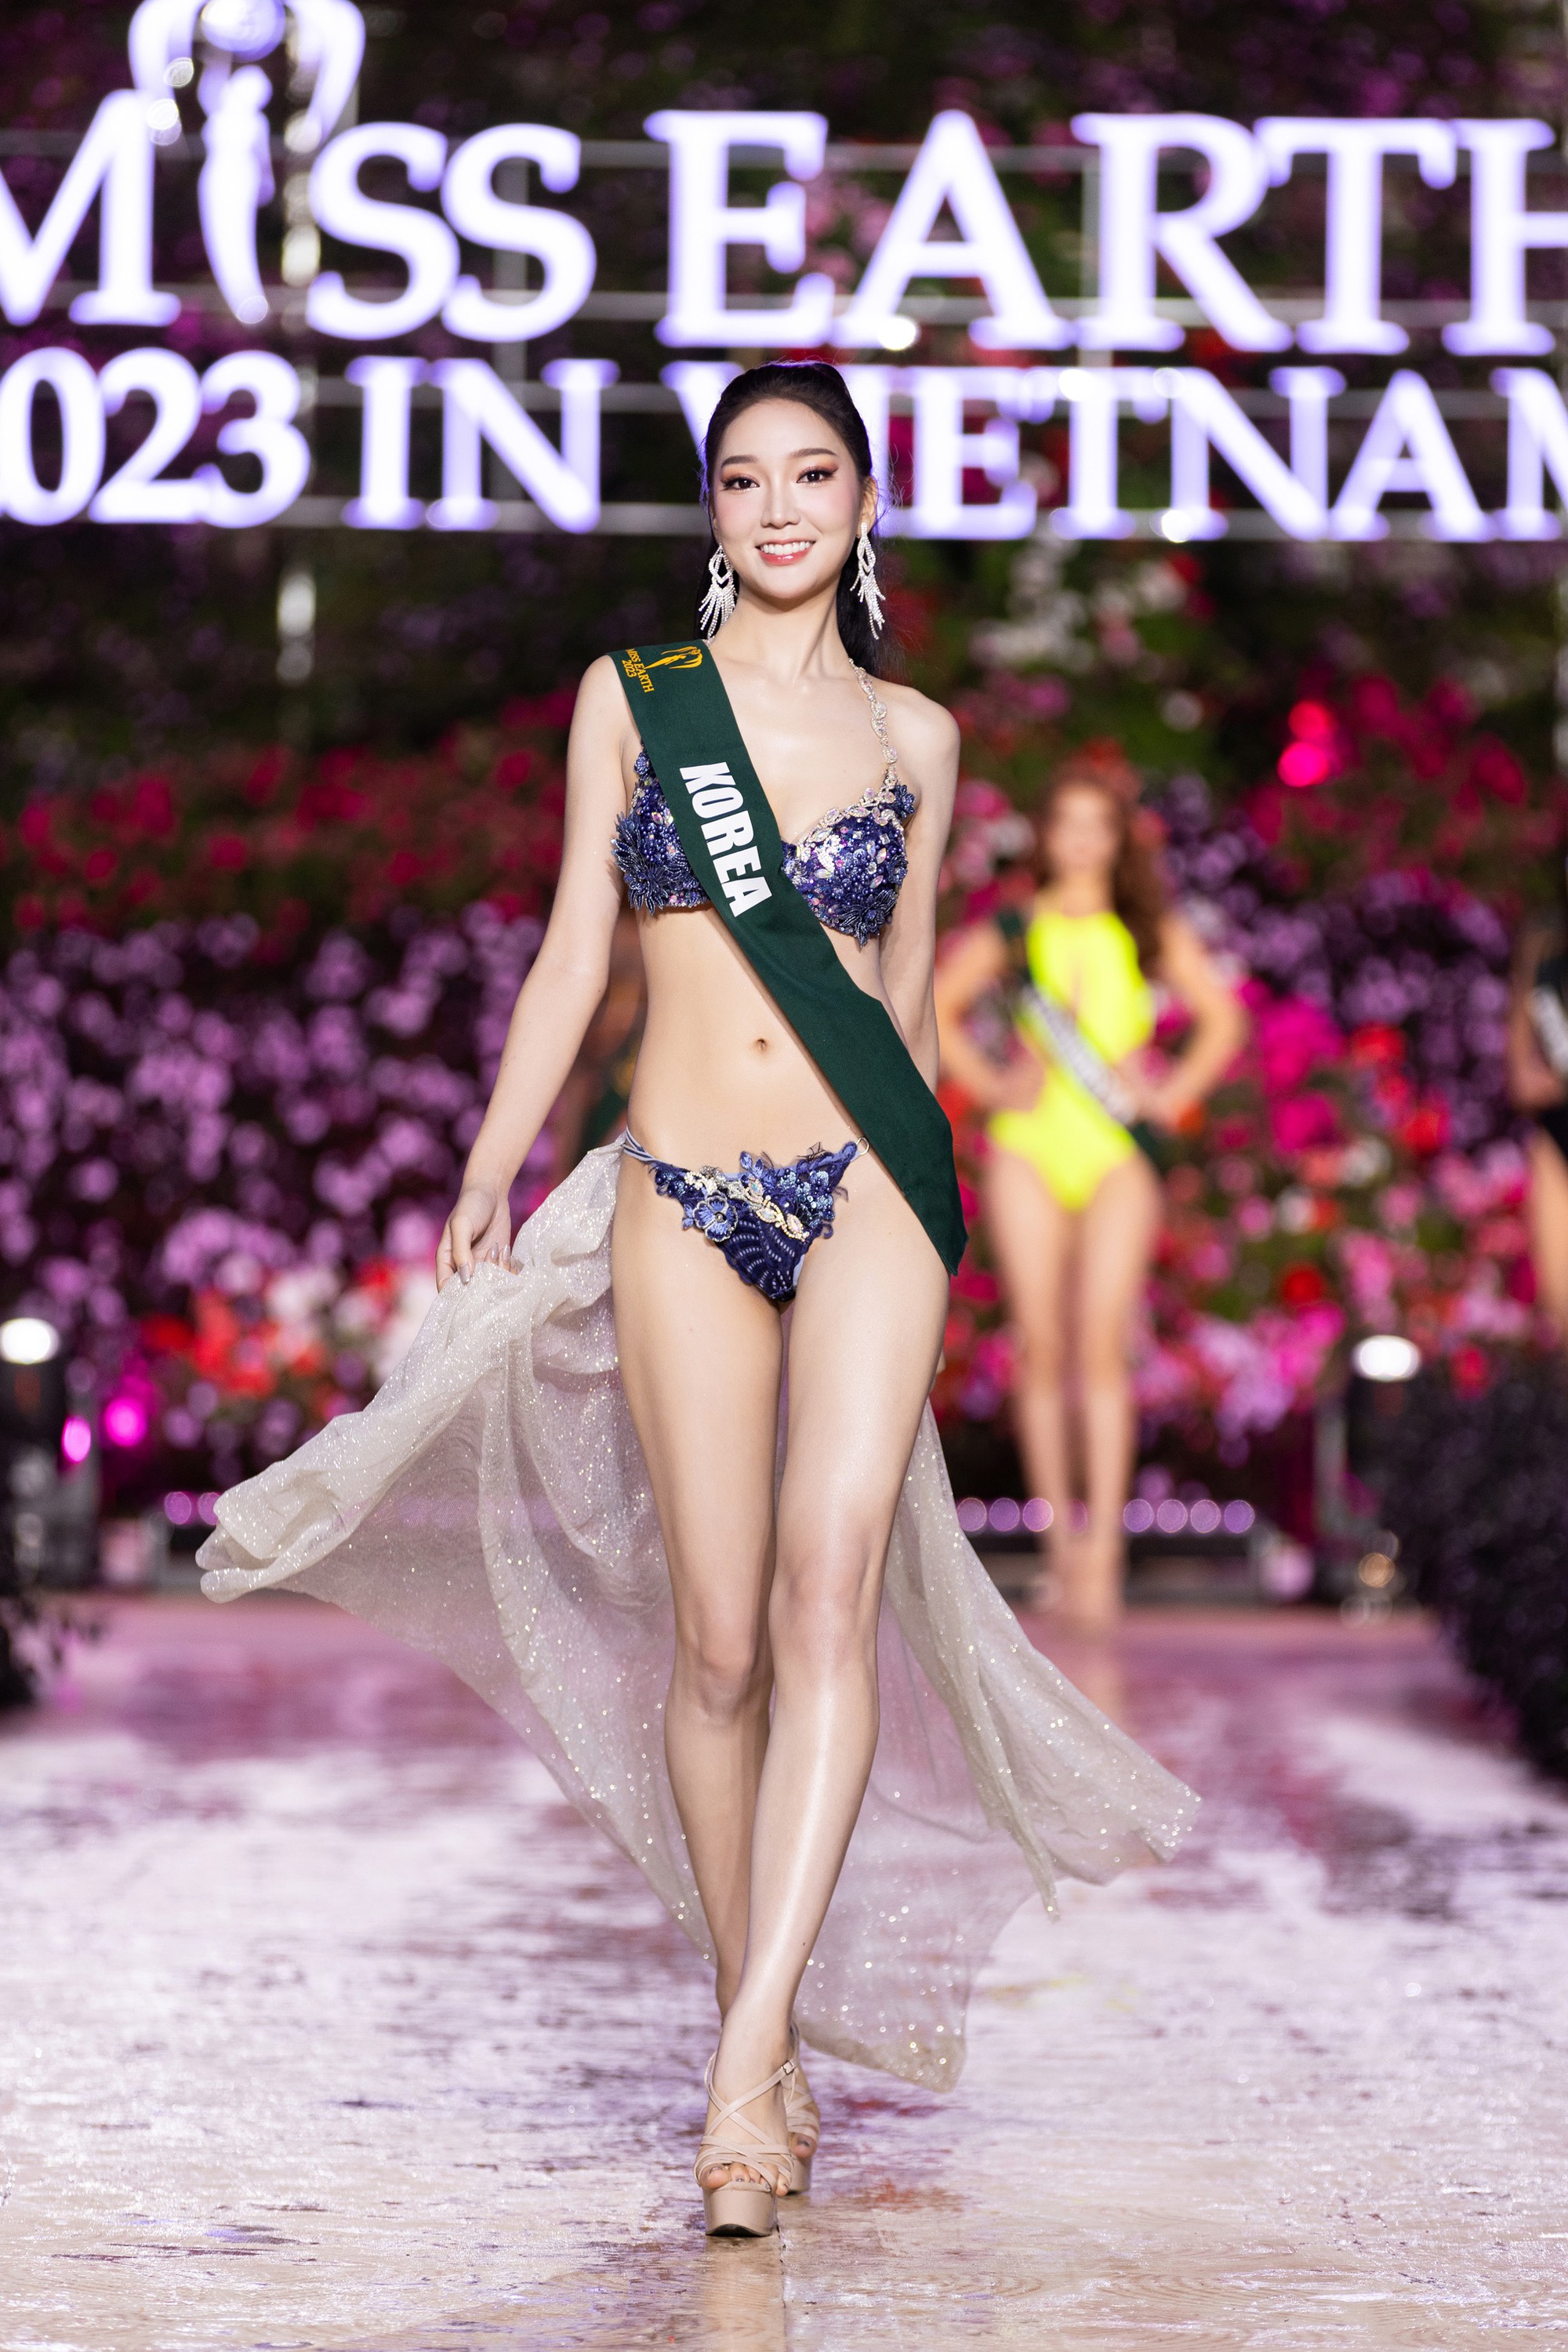 Dàn người đẹp Miss Earth 2023 khoe dáng nóng bỏng với bikini dưới trời lạnh 15 độ - Ảnh 27.